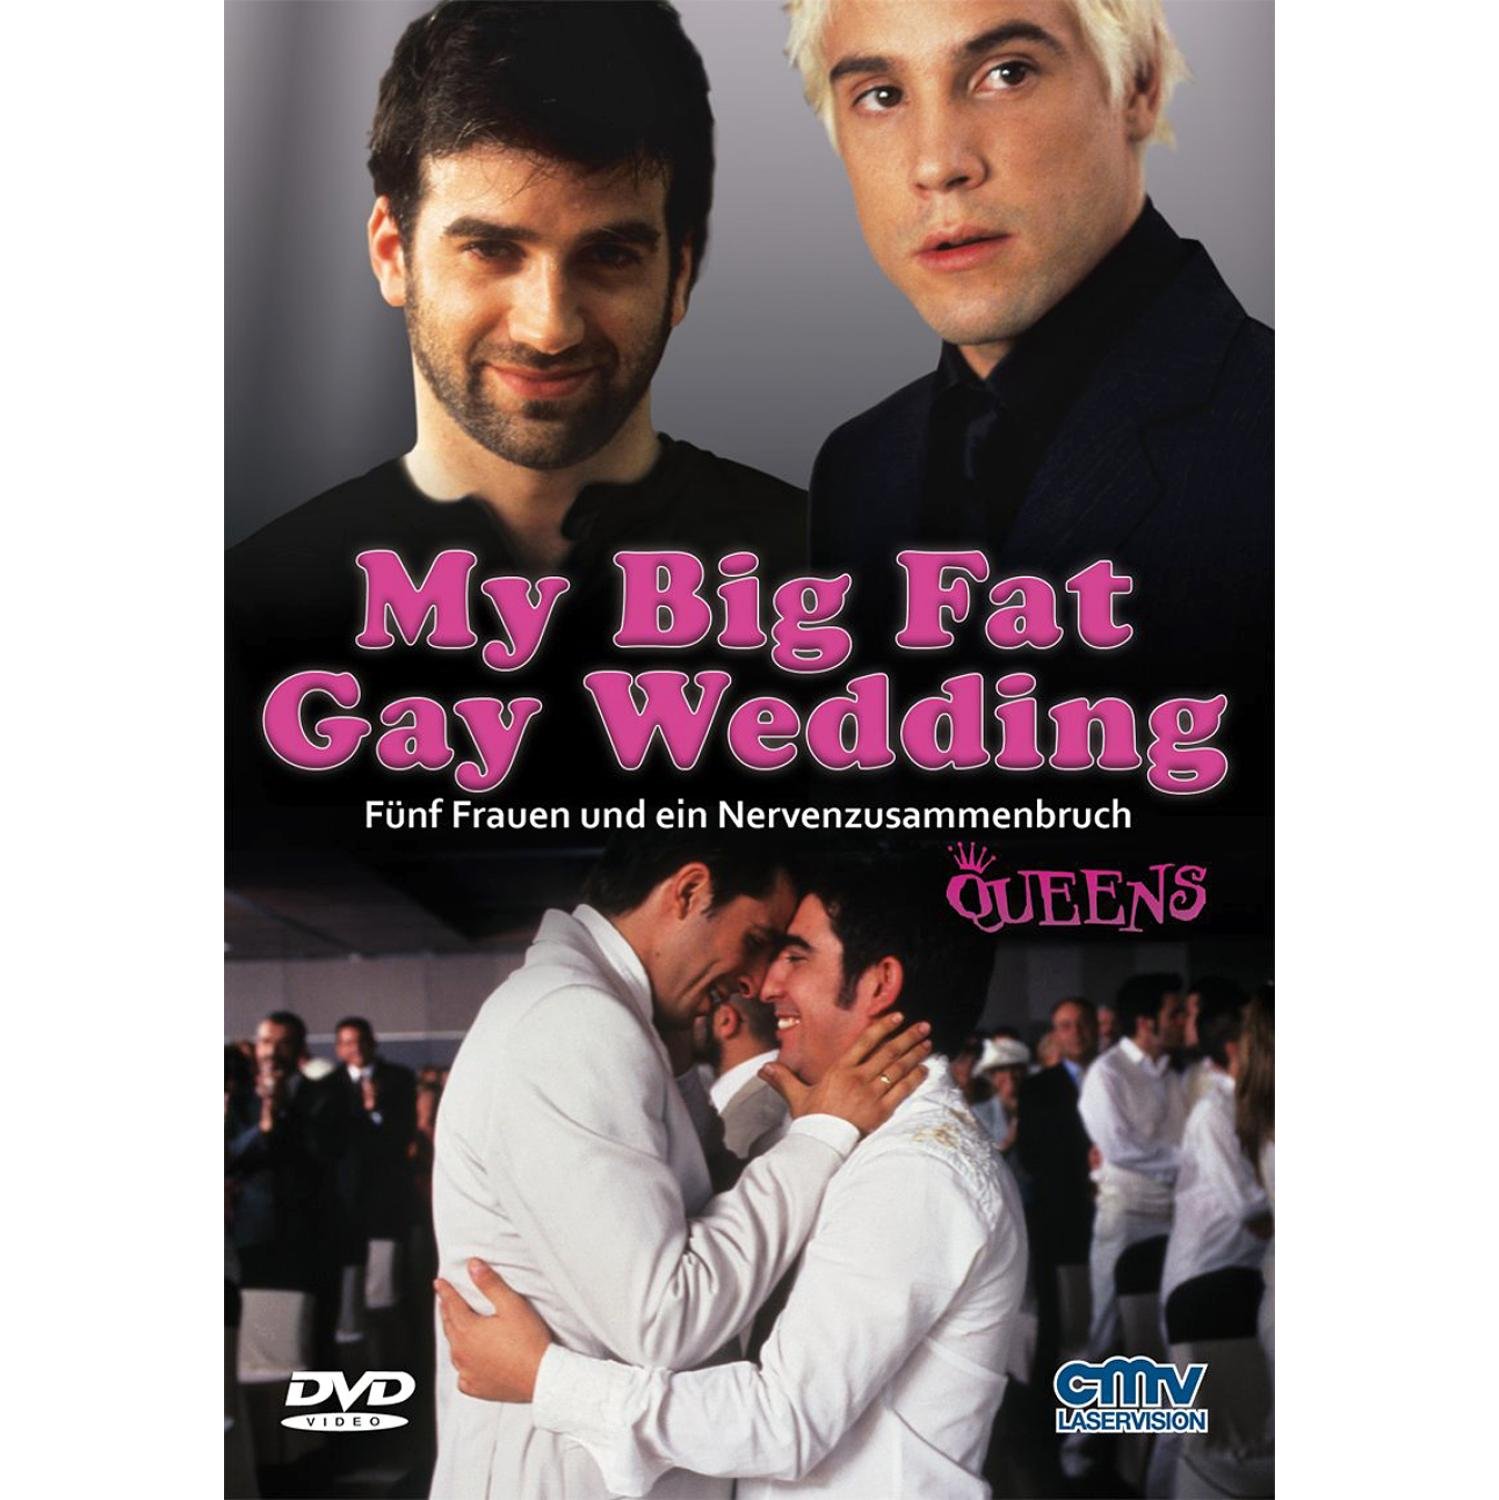 MY BIG FAT DVD GAY WEDDING